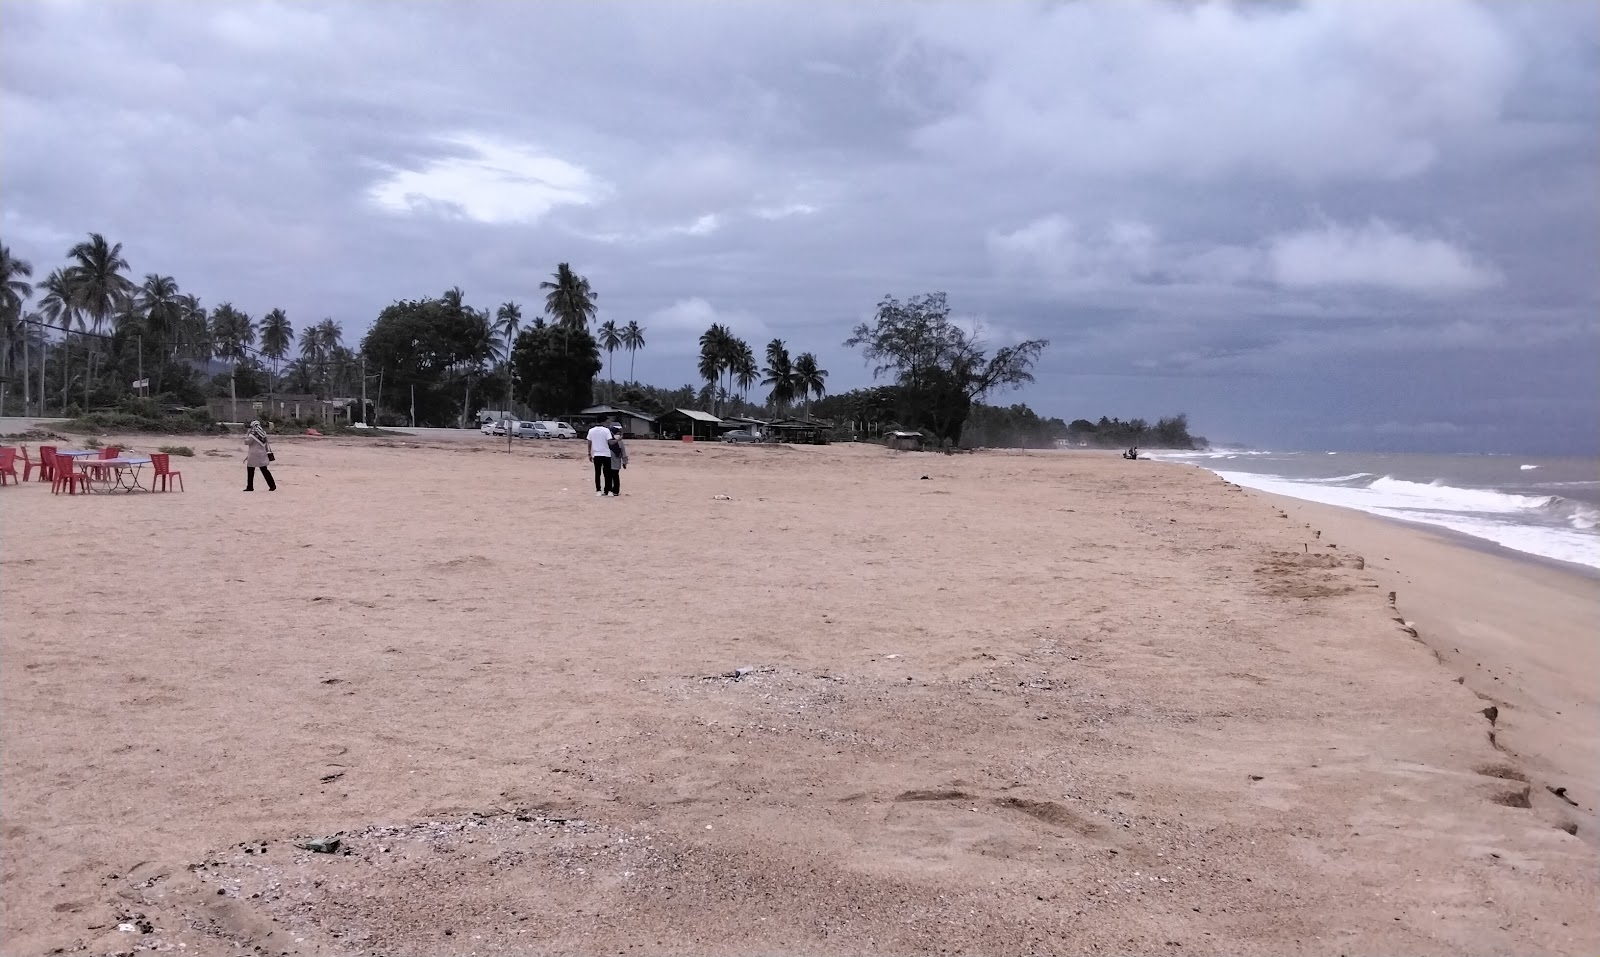 Zdjęcie Merang Beach z poziomem czystości głoska bezdźwięczna